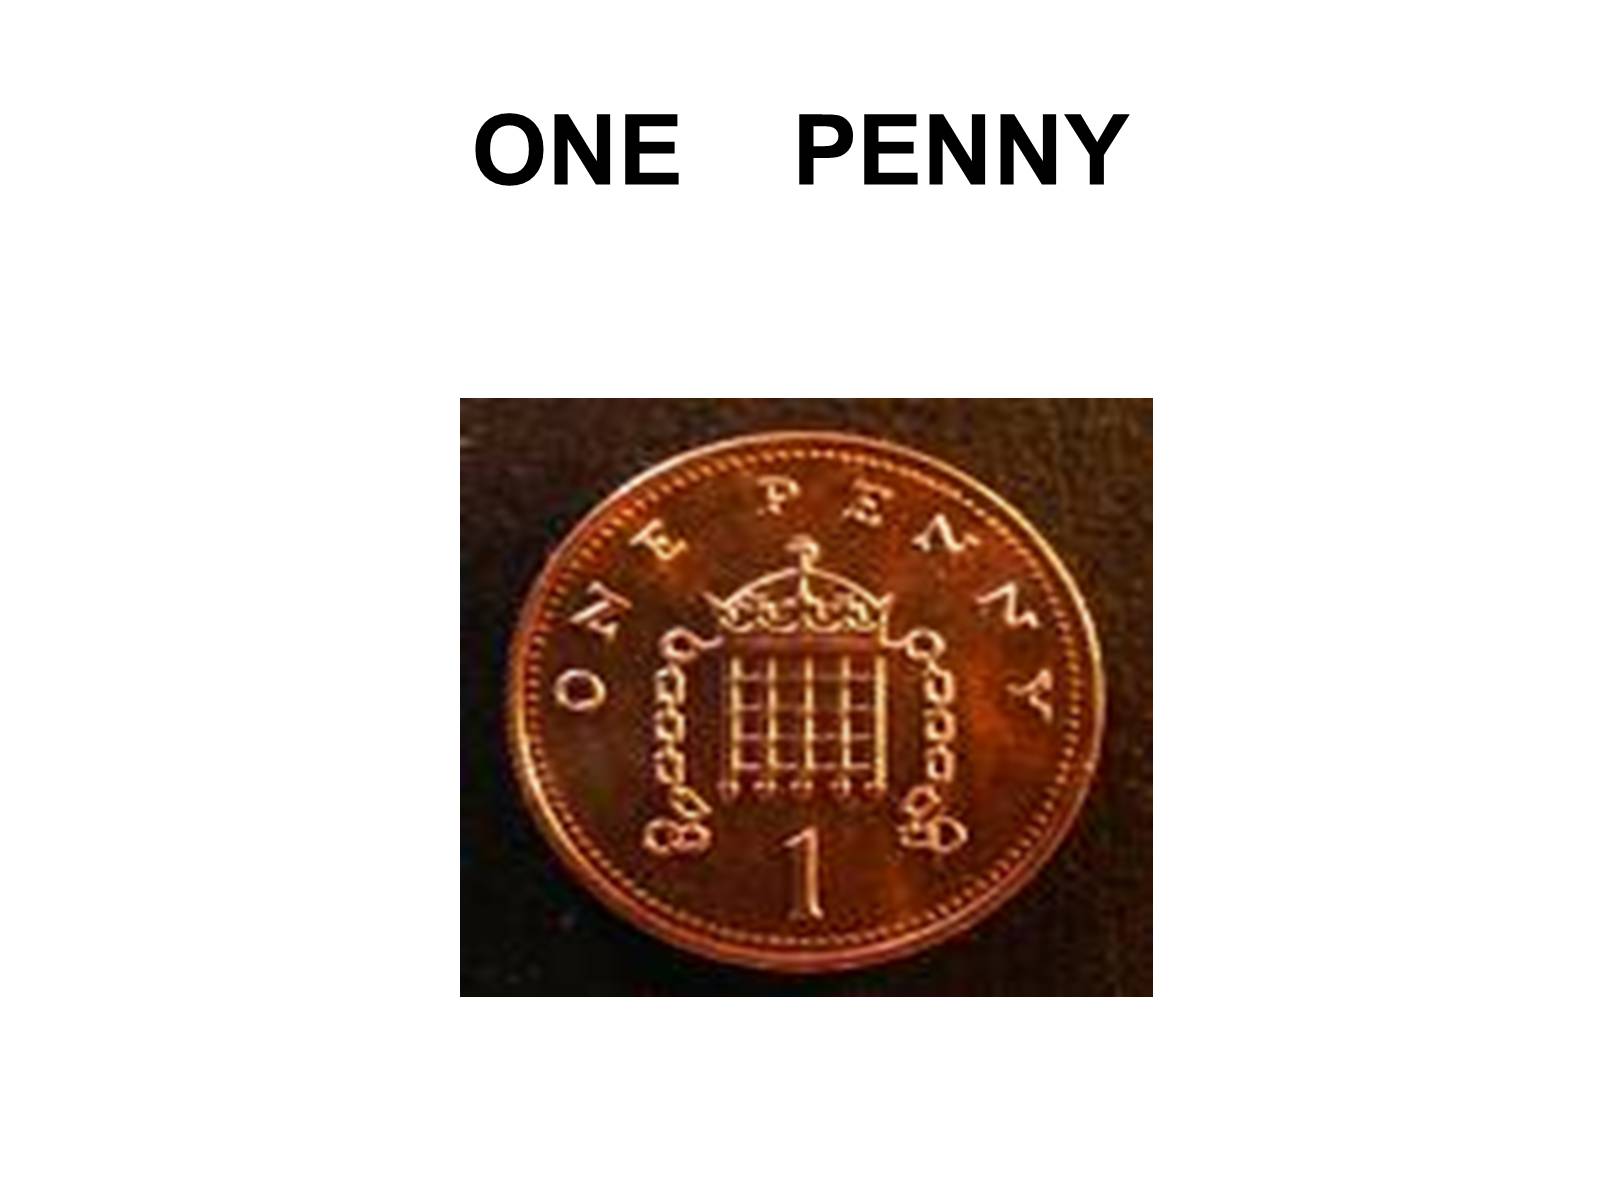 Название денег Великобритании в символах. English Penny. American money презентация на английском. One Penny перевод на русский язык. Дай денег на английском